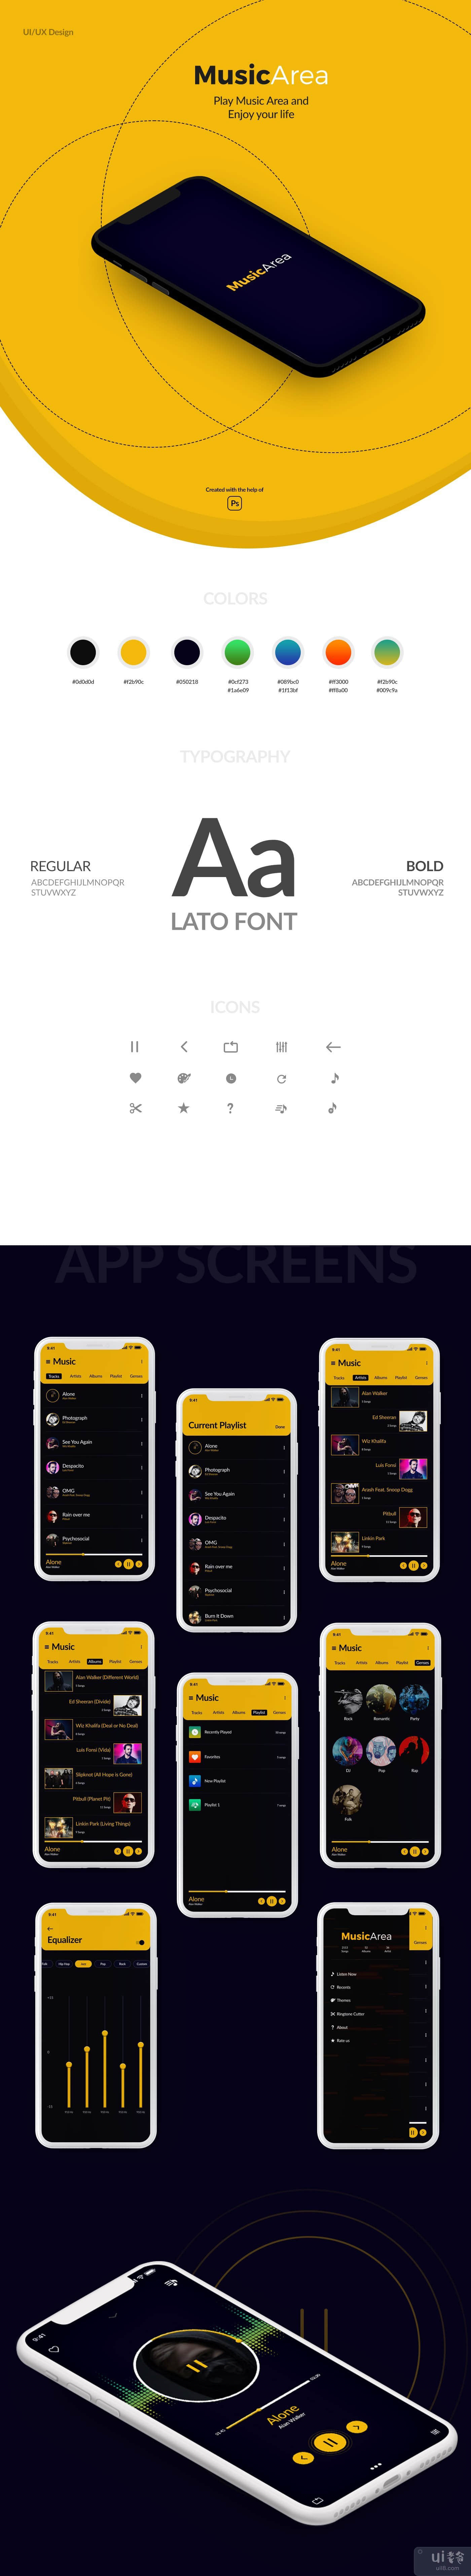 音乐应用界面设计(Music App UI Design)插图